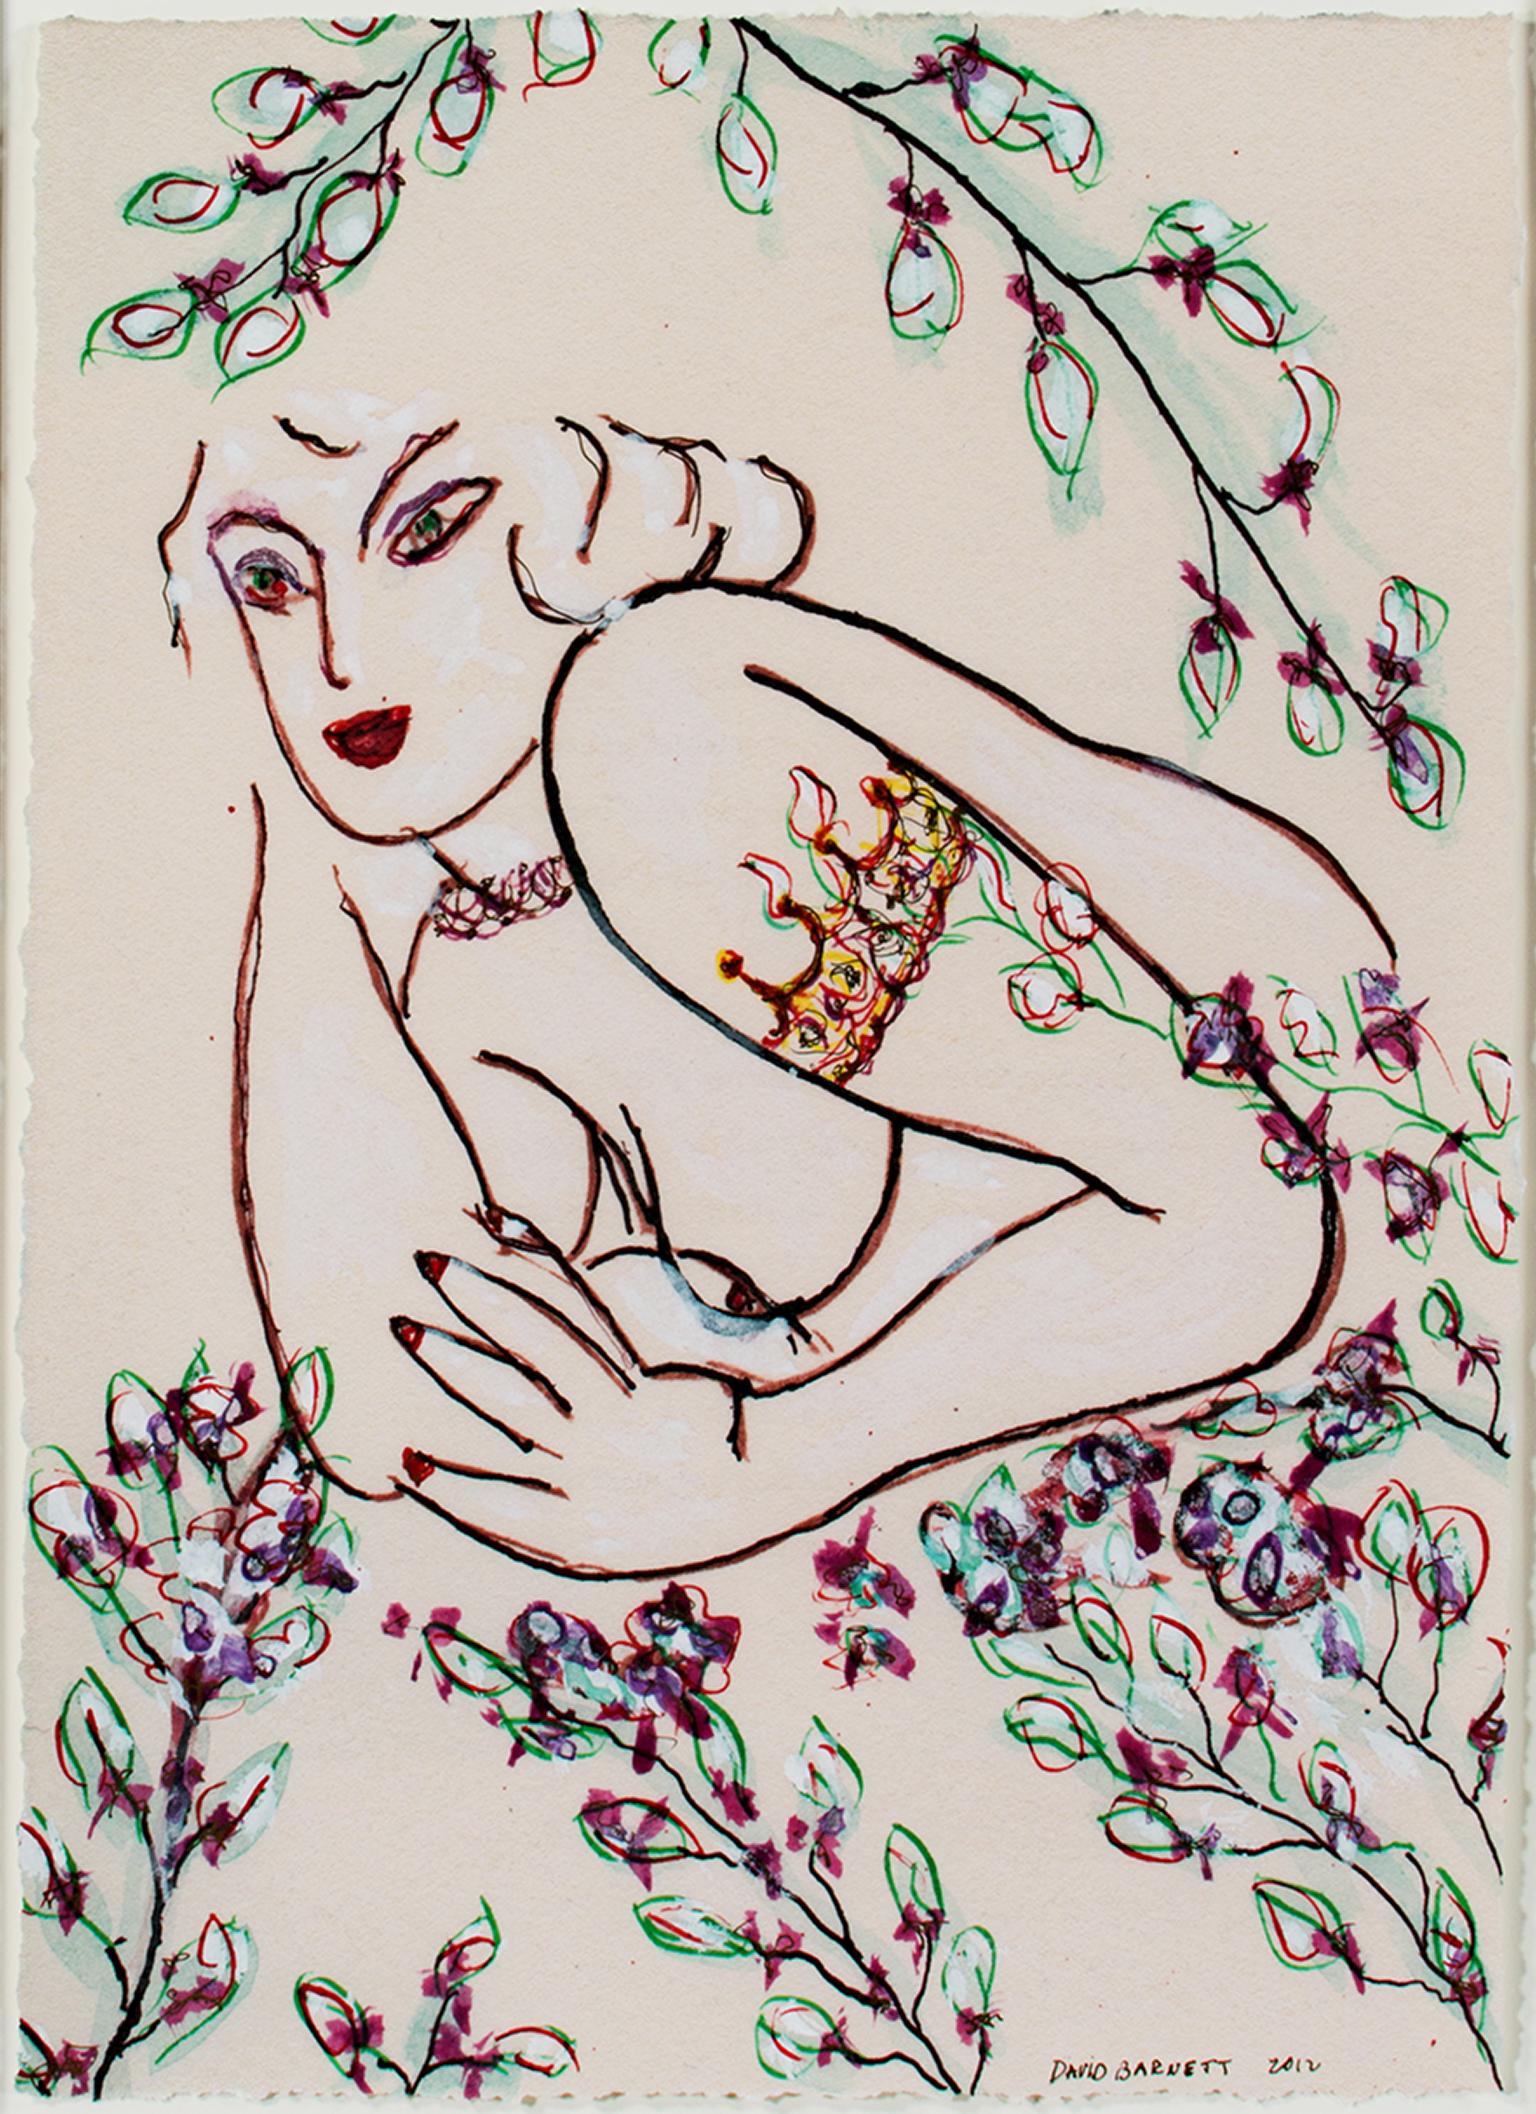 "Famous Artist Series : Tattooed Matisse Model Variation III" est une oeuvre originale en technique mixte de David Barnett, signée et datée en bas à droite. Cette peinture inspirée de Matisse représente une femme entourée de fleurs. Elle a un